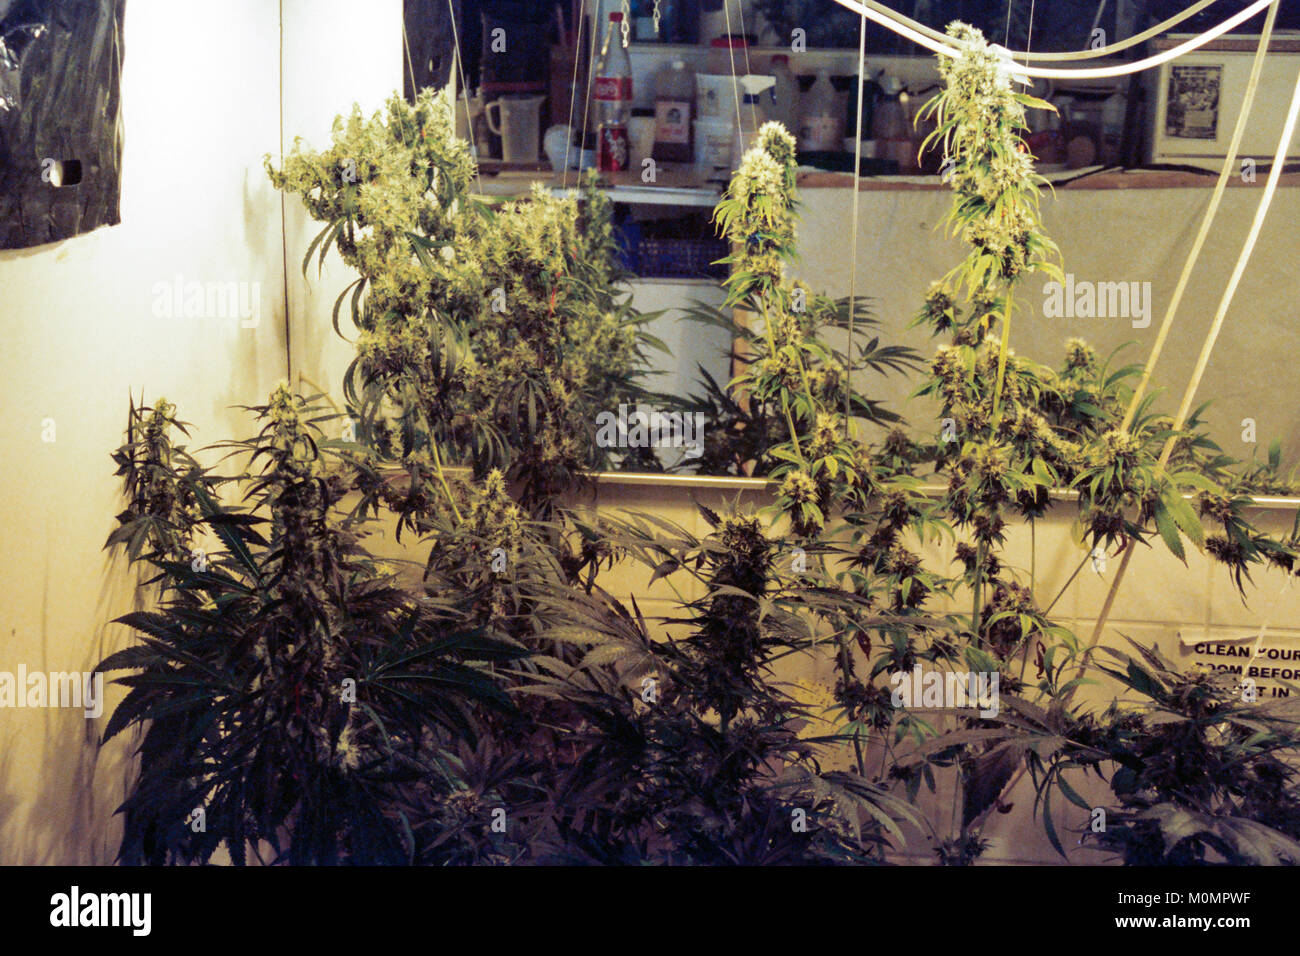 Les plantes de cannabis au musée de la marijuana à Amsterdam, Pays-Bas. Banque D'Images